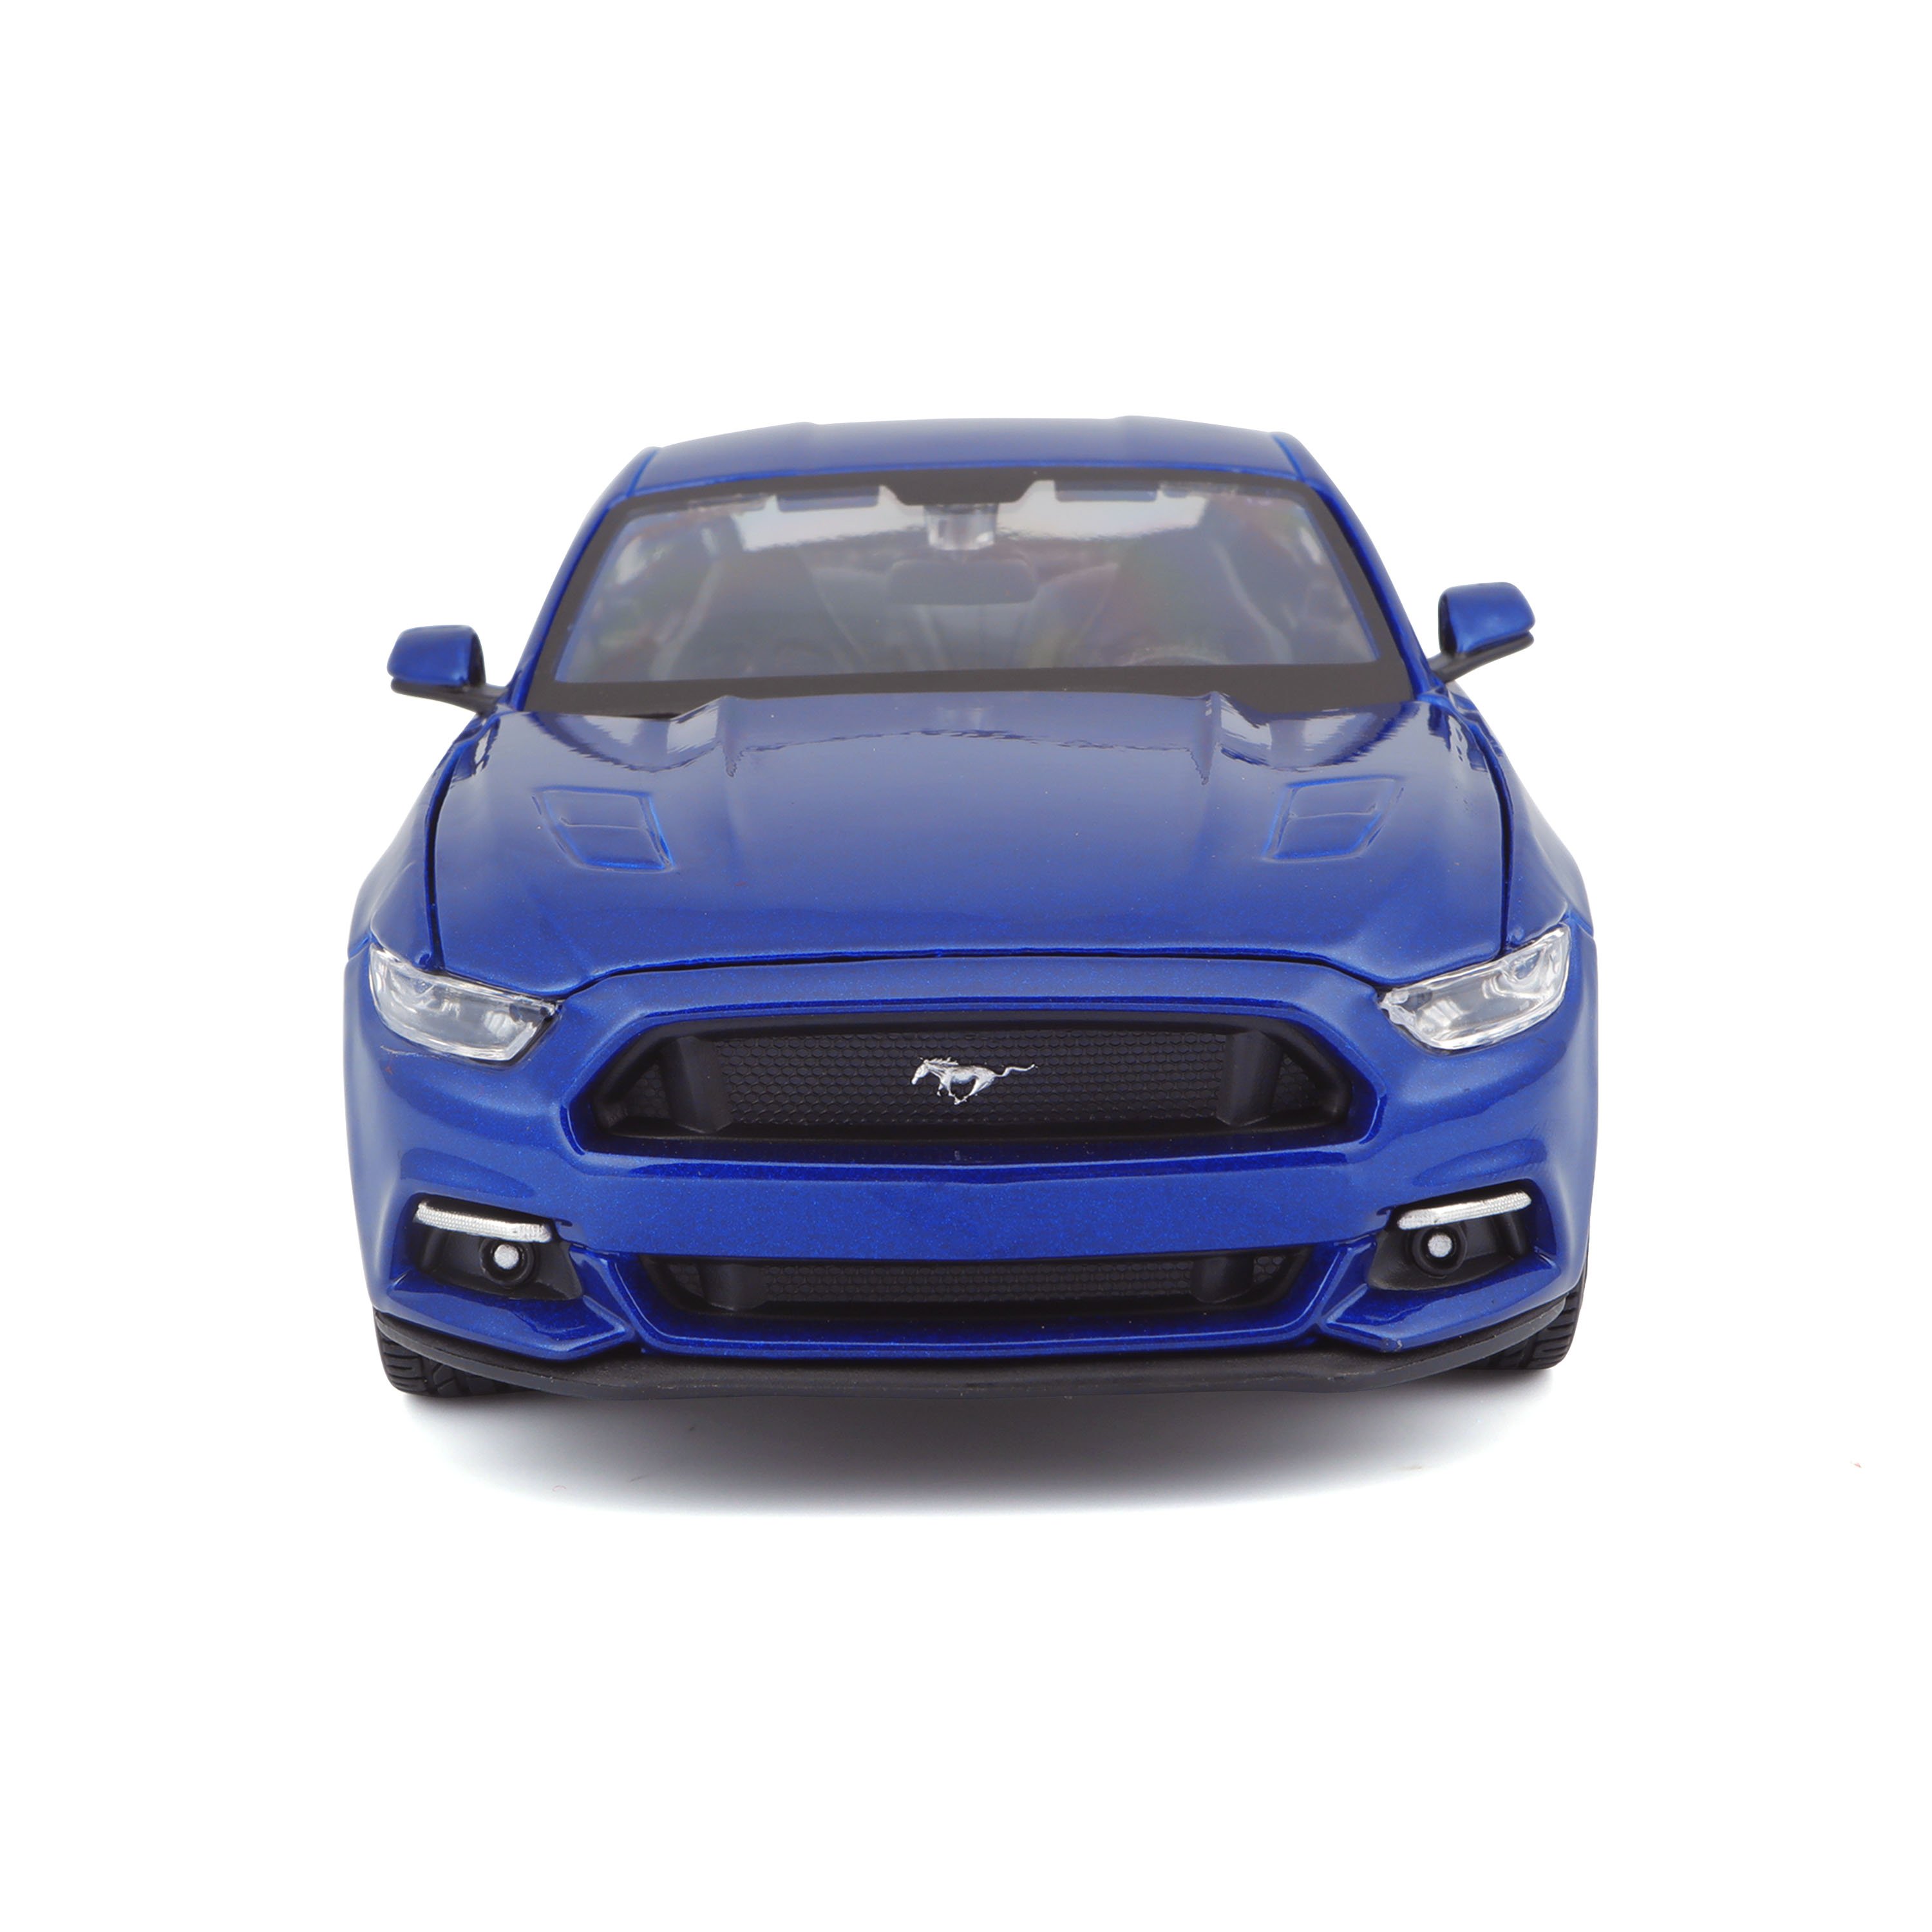 Ігрова автомодель Maisto Ford Mustang GT 2015, синій, 1:24 (31508 blue) - фото 6